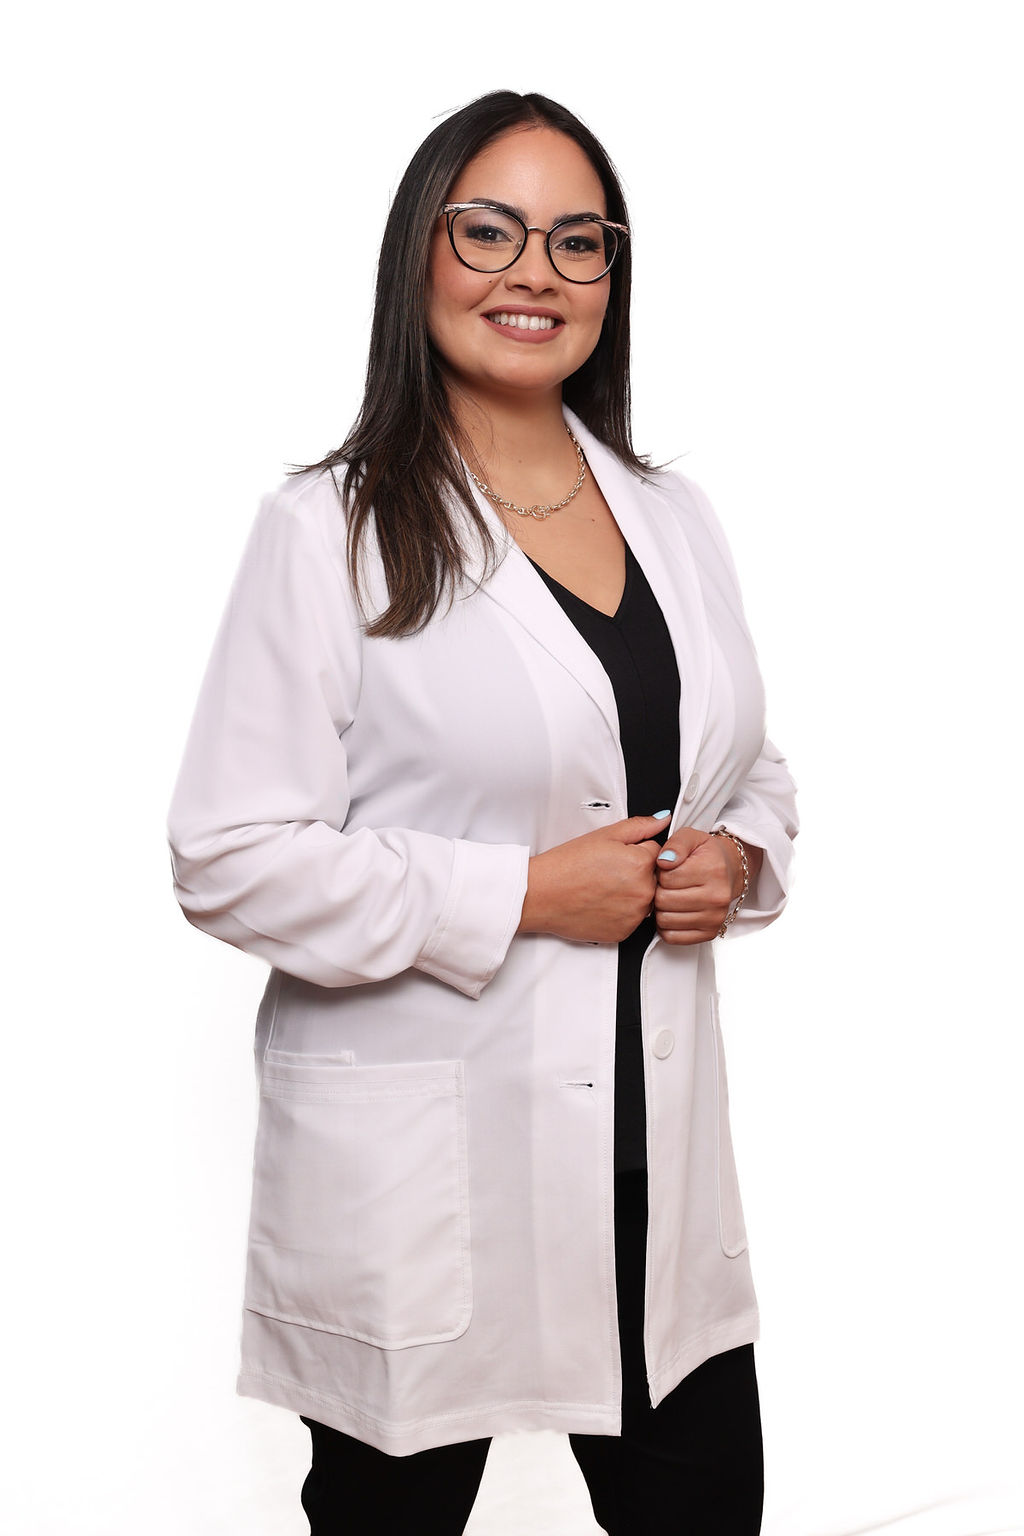 Dr. Darleen Caban